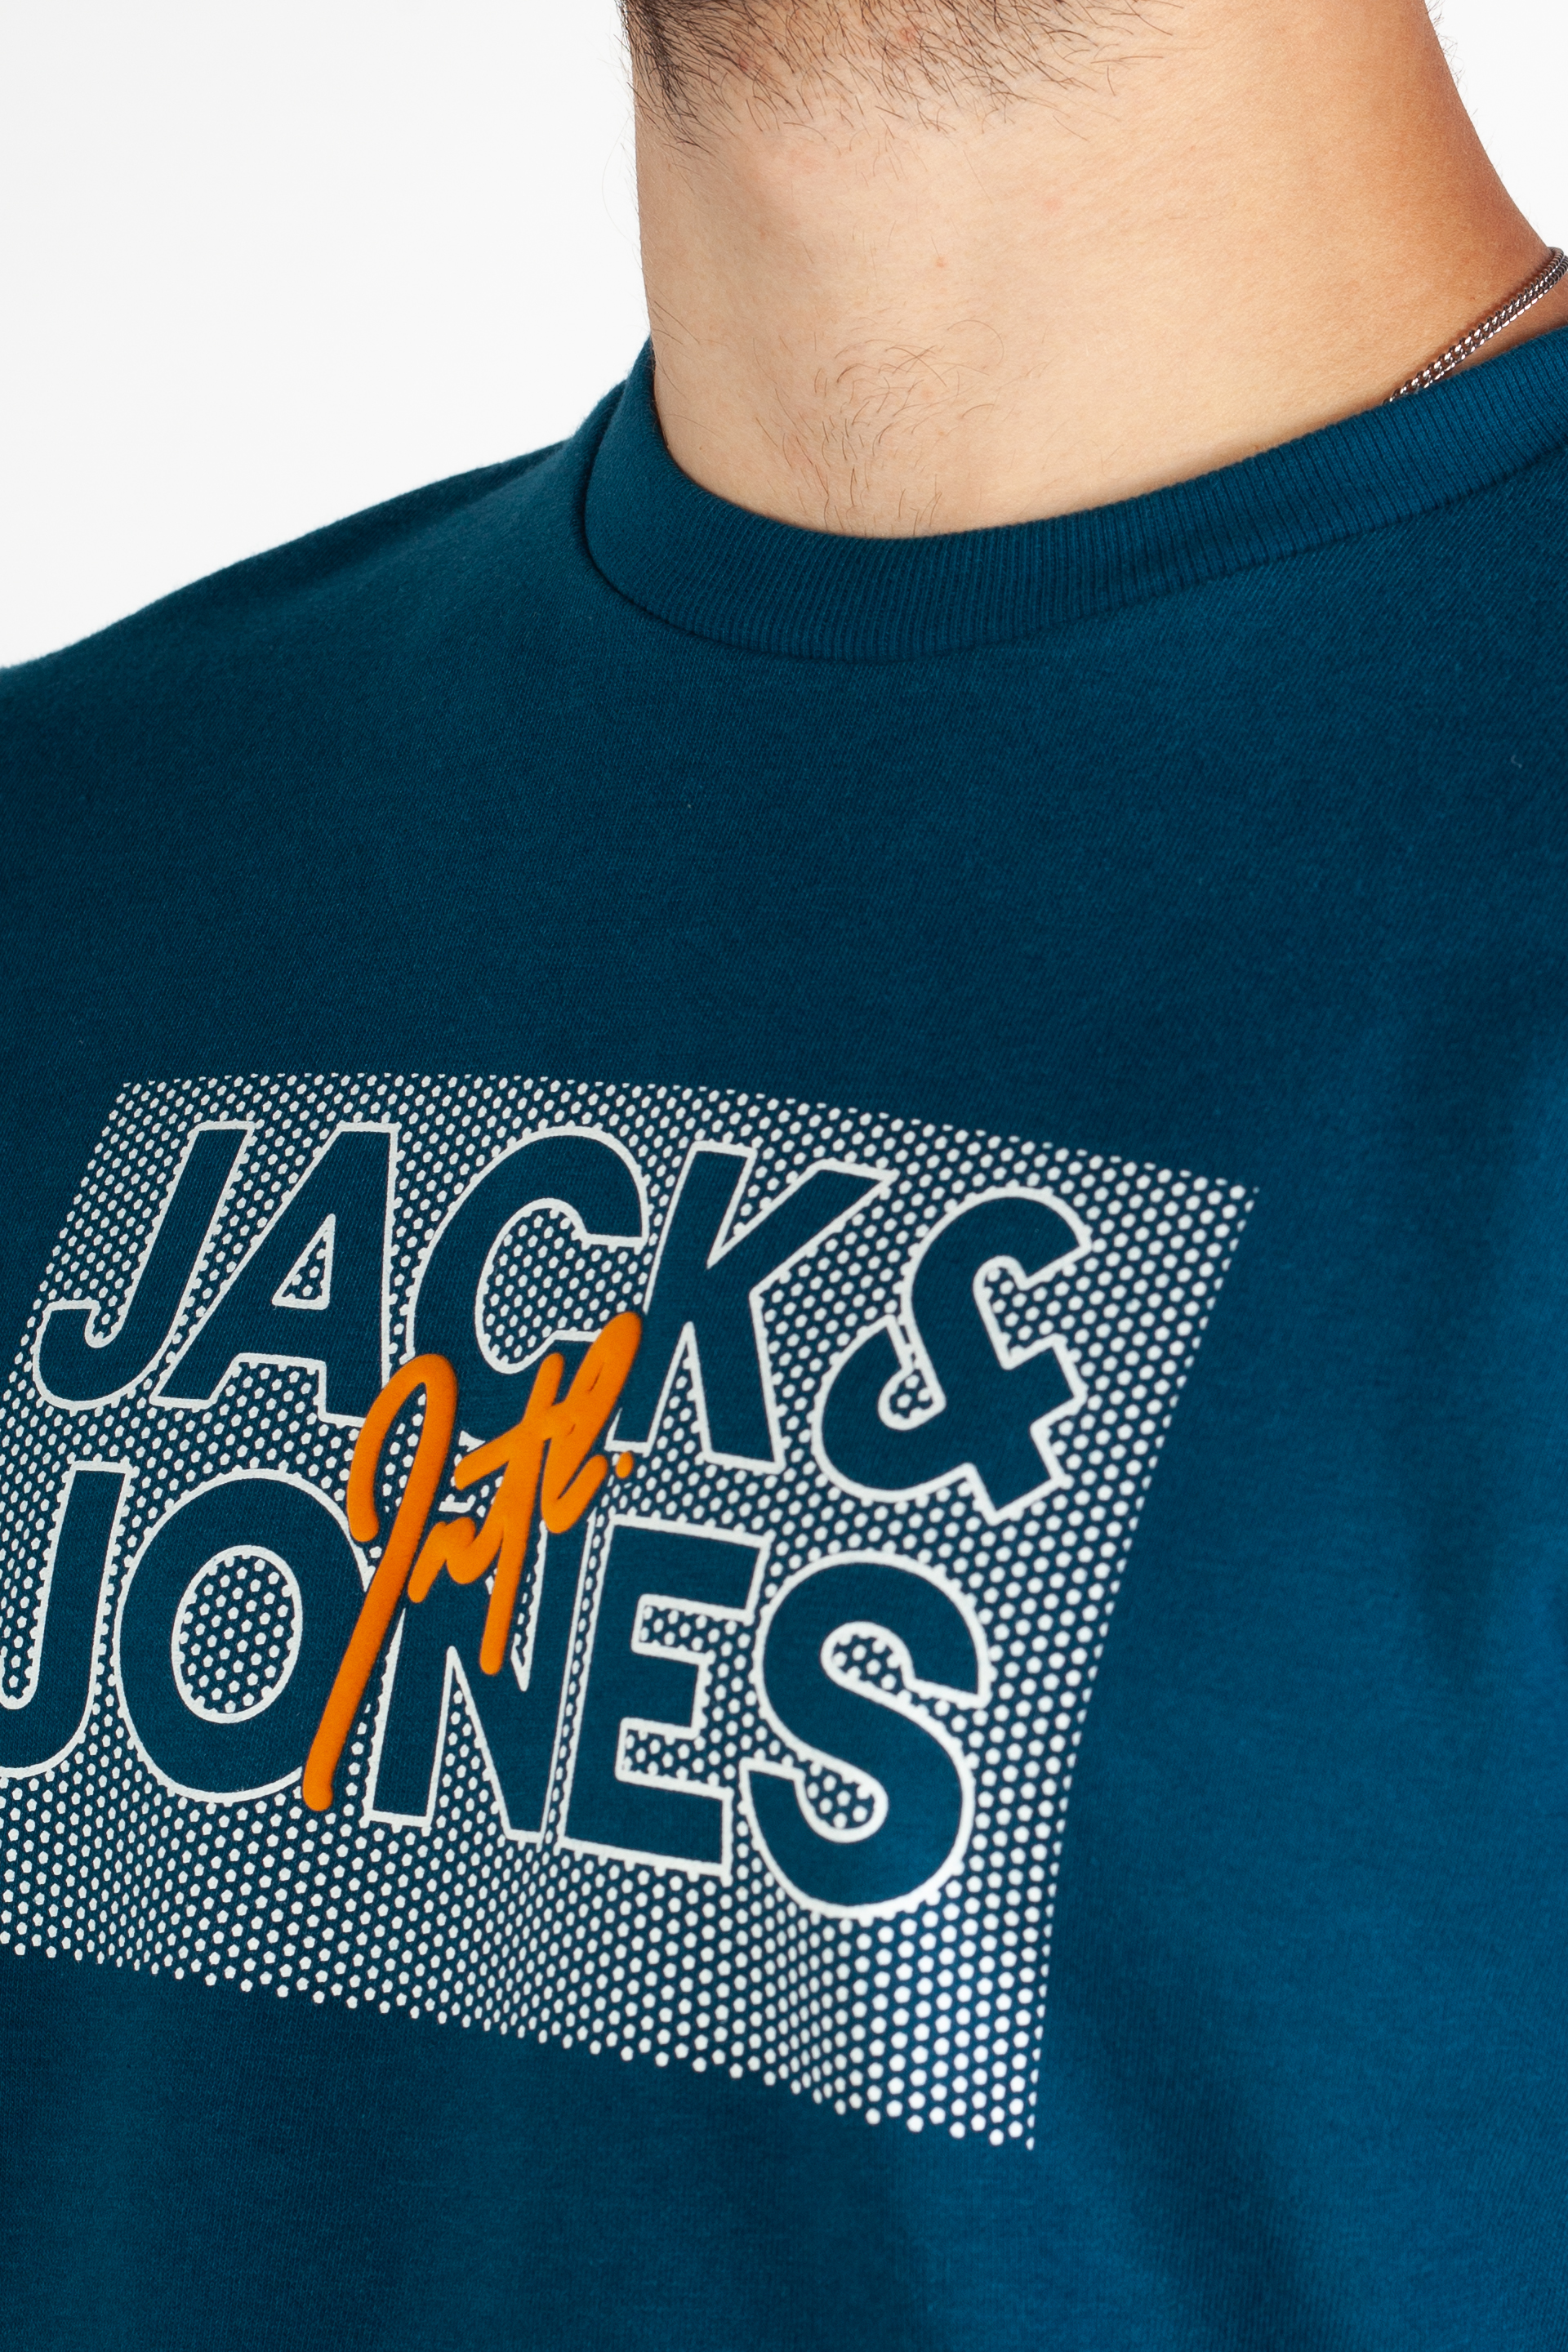 Спортивный свитер JACK & JONES 12244822-Sailor-Blue